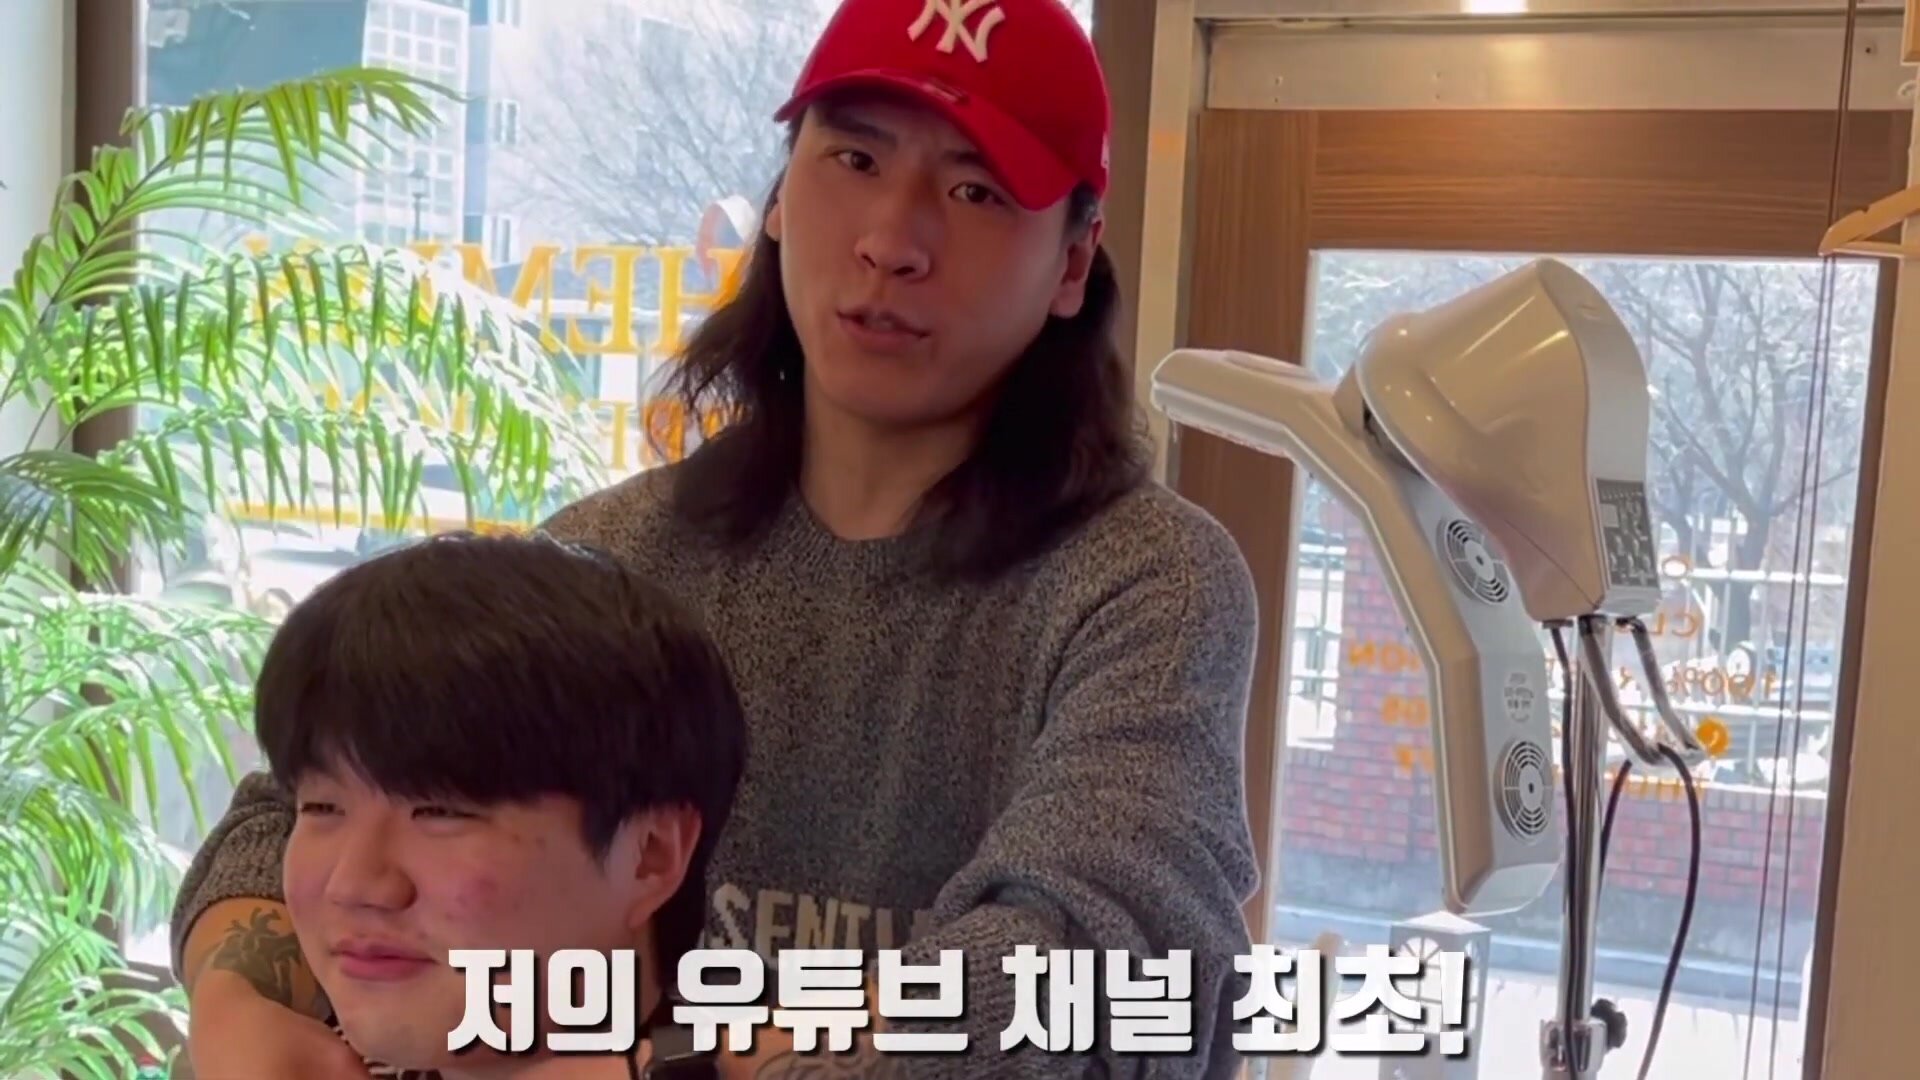 Korean Guy Get Shaved Razor-ed Bald in the Barber